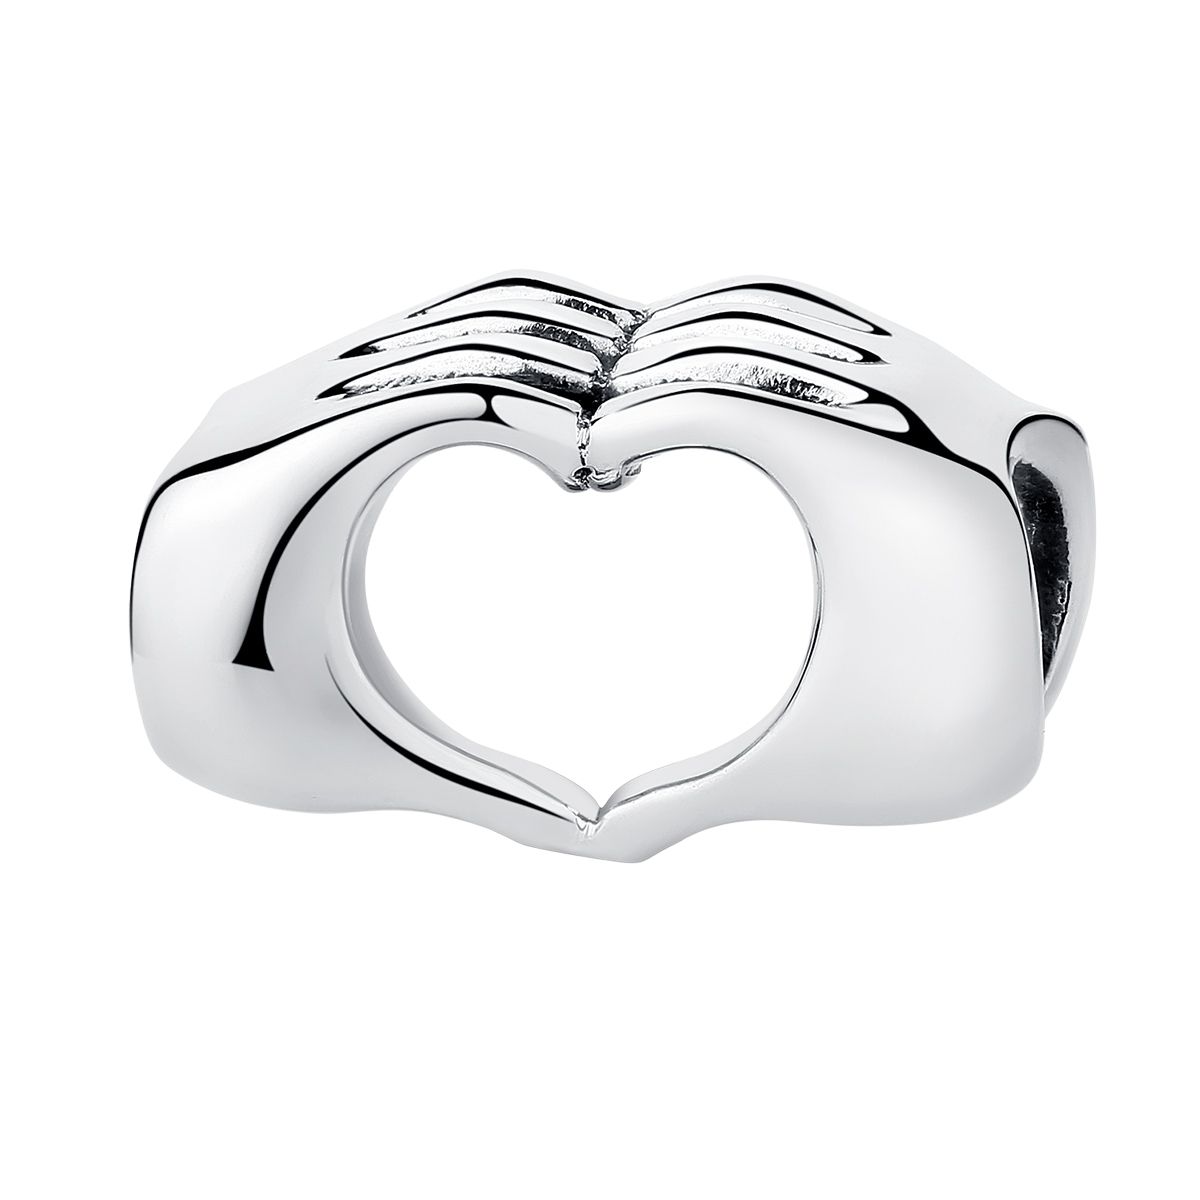 Handen hart bedel  love bead  Zilverana  geschikt voor Biagi , Pandora , Trollbeads armband  925 zilver